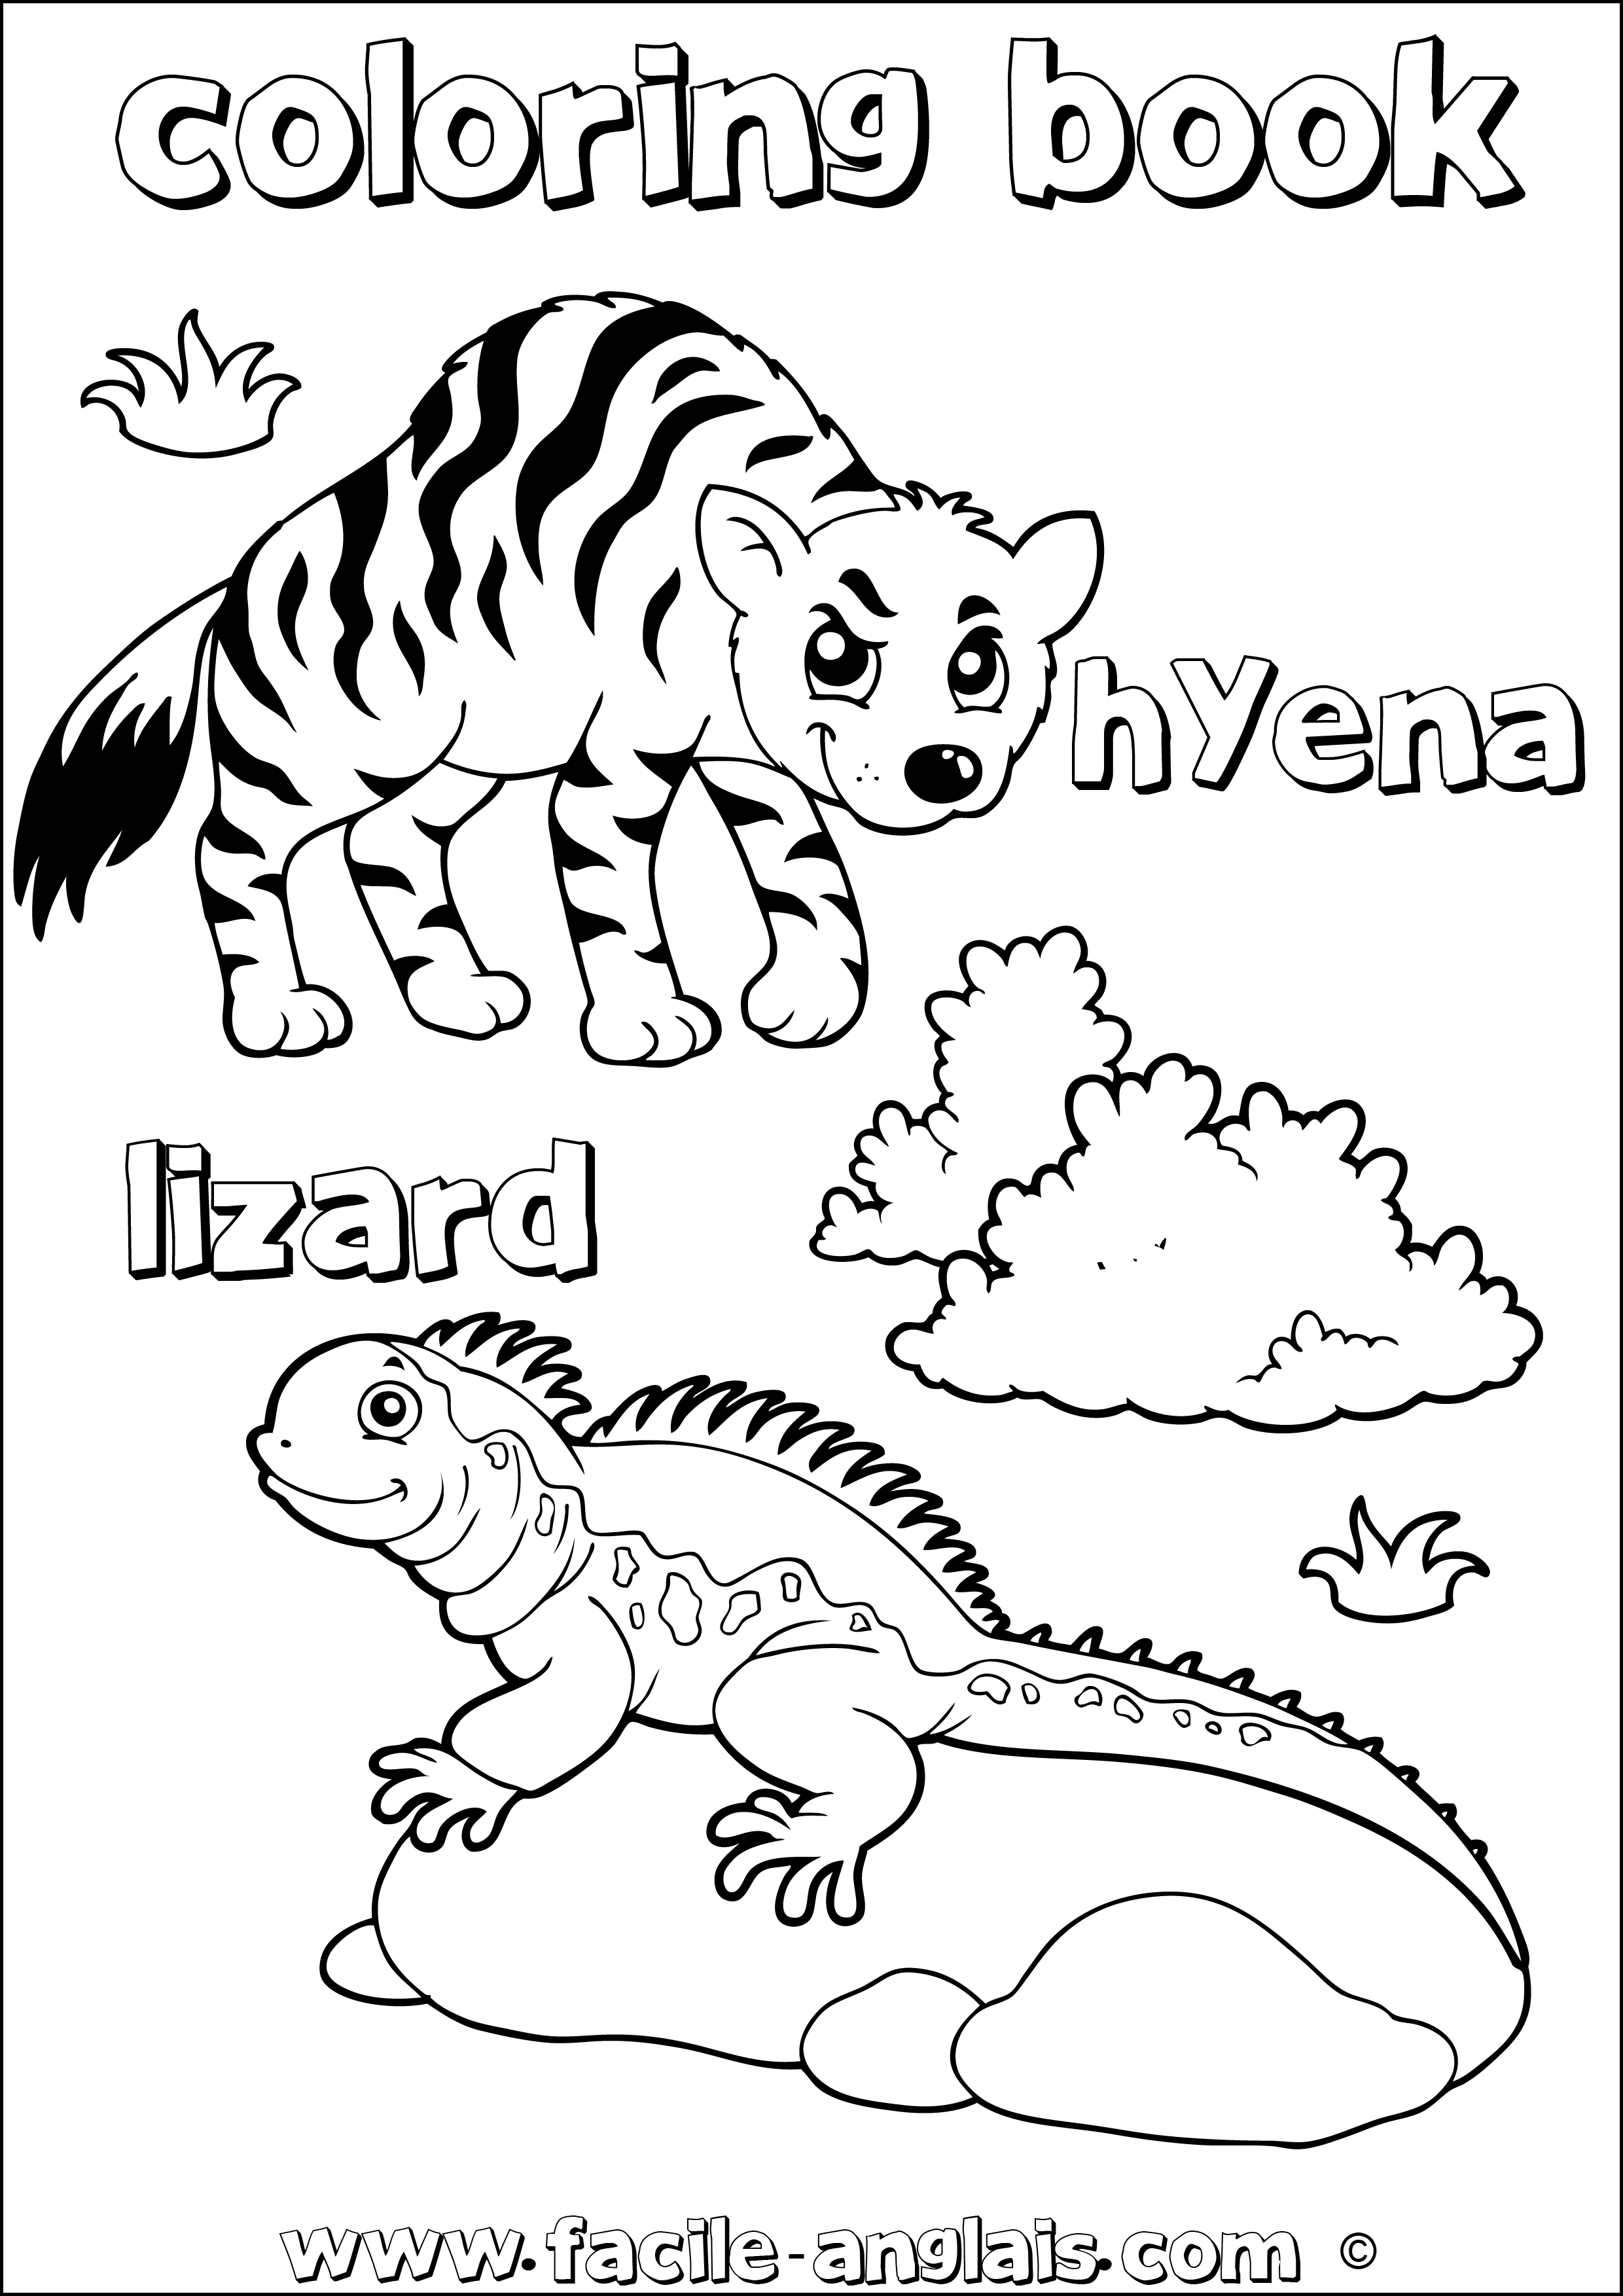 coloring book hyena lizard